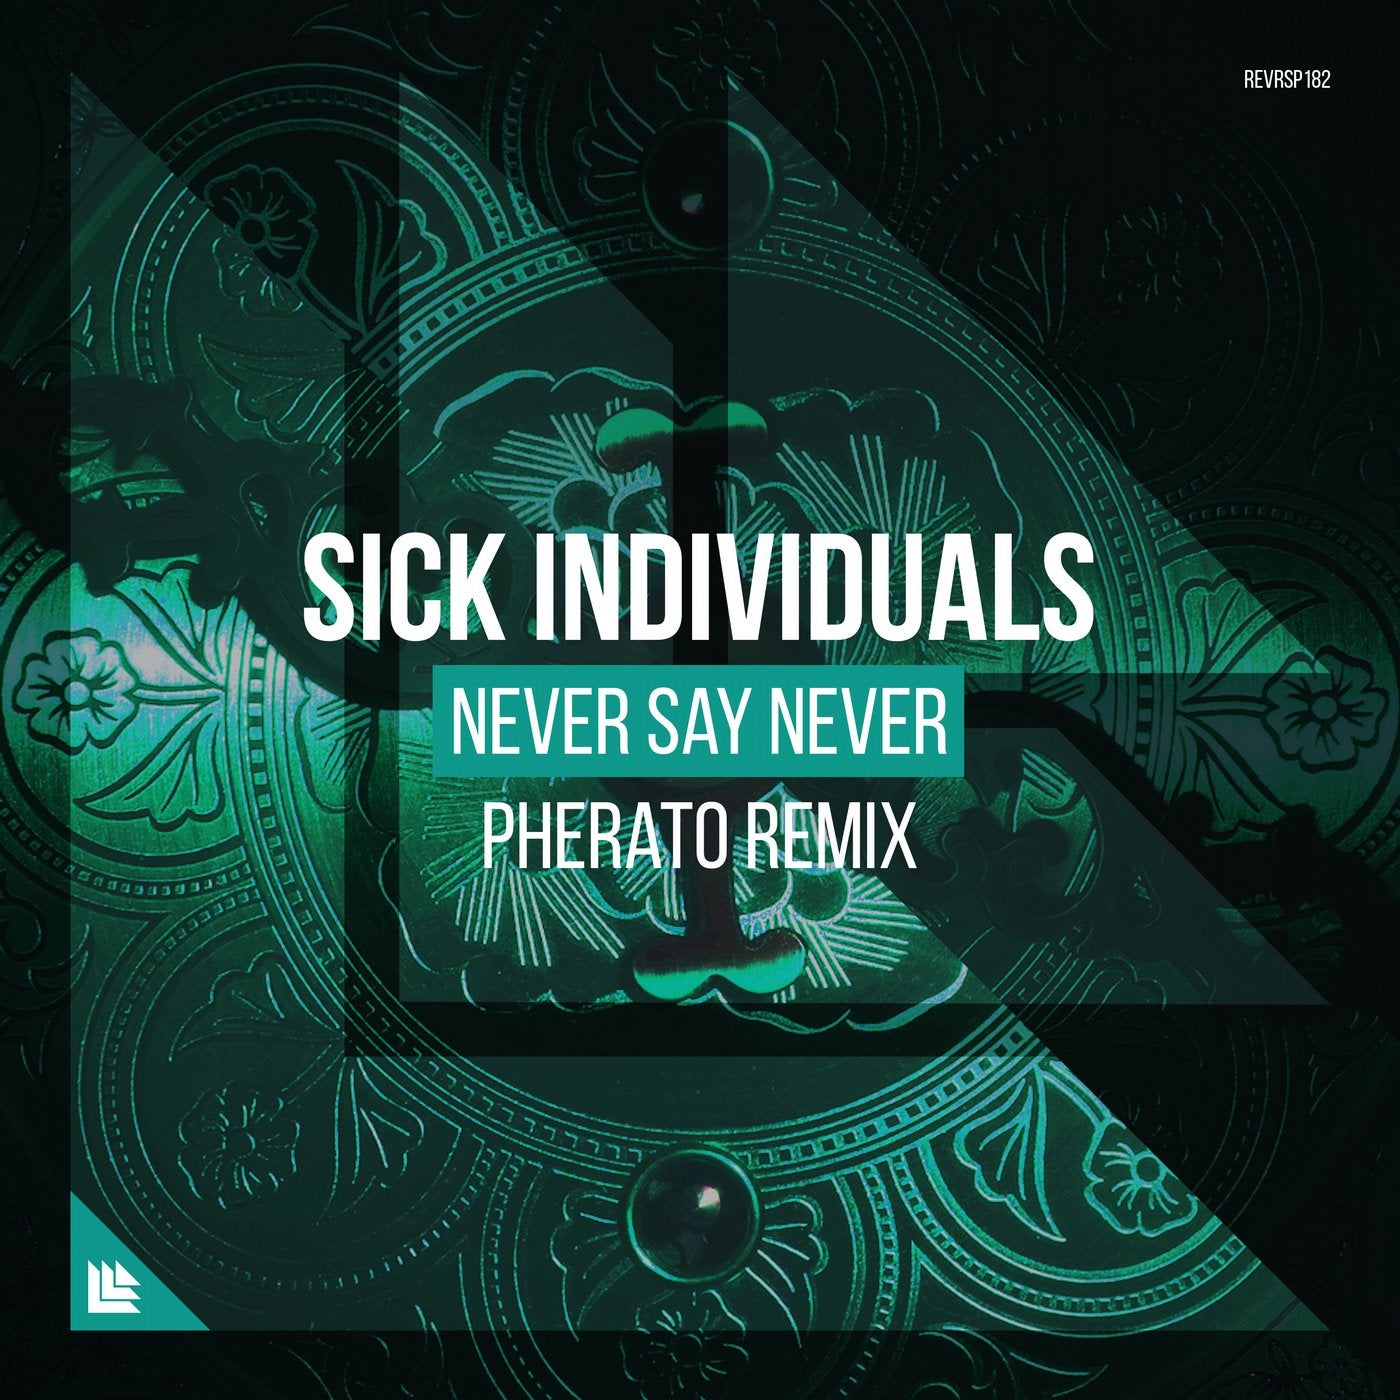 Never Say Never - Pherato Remix